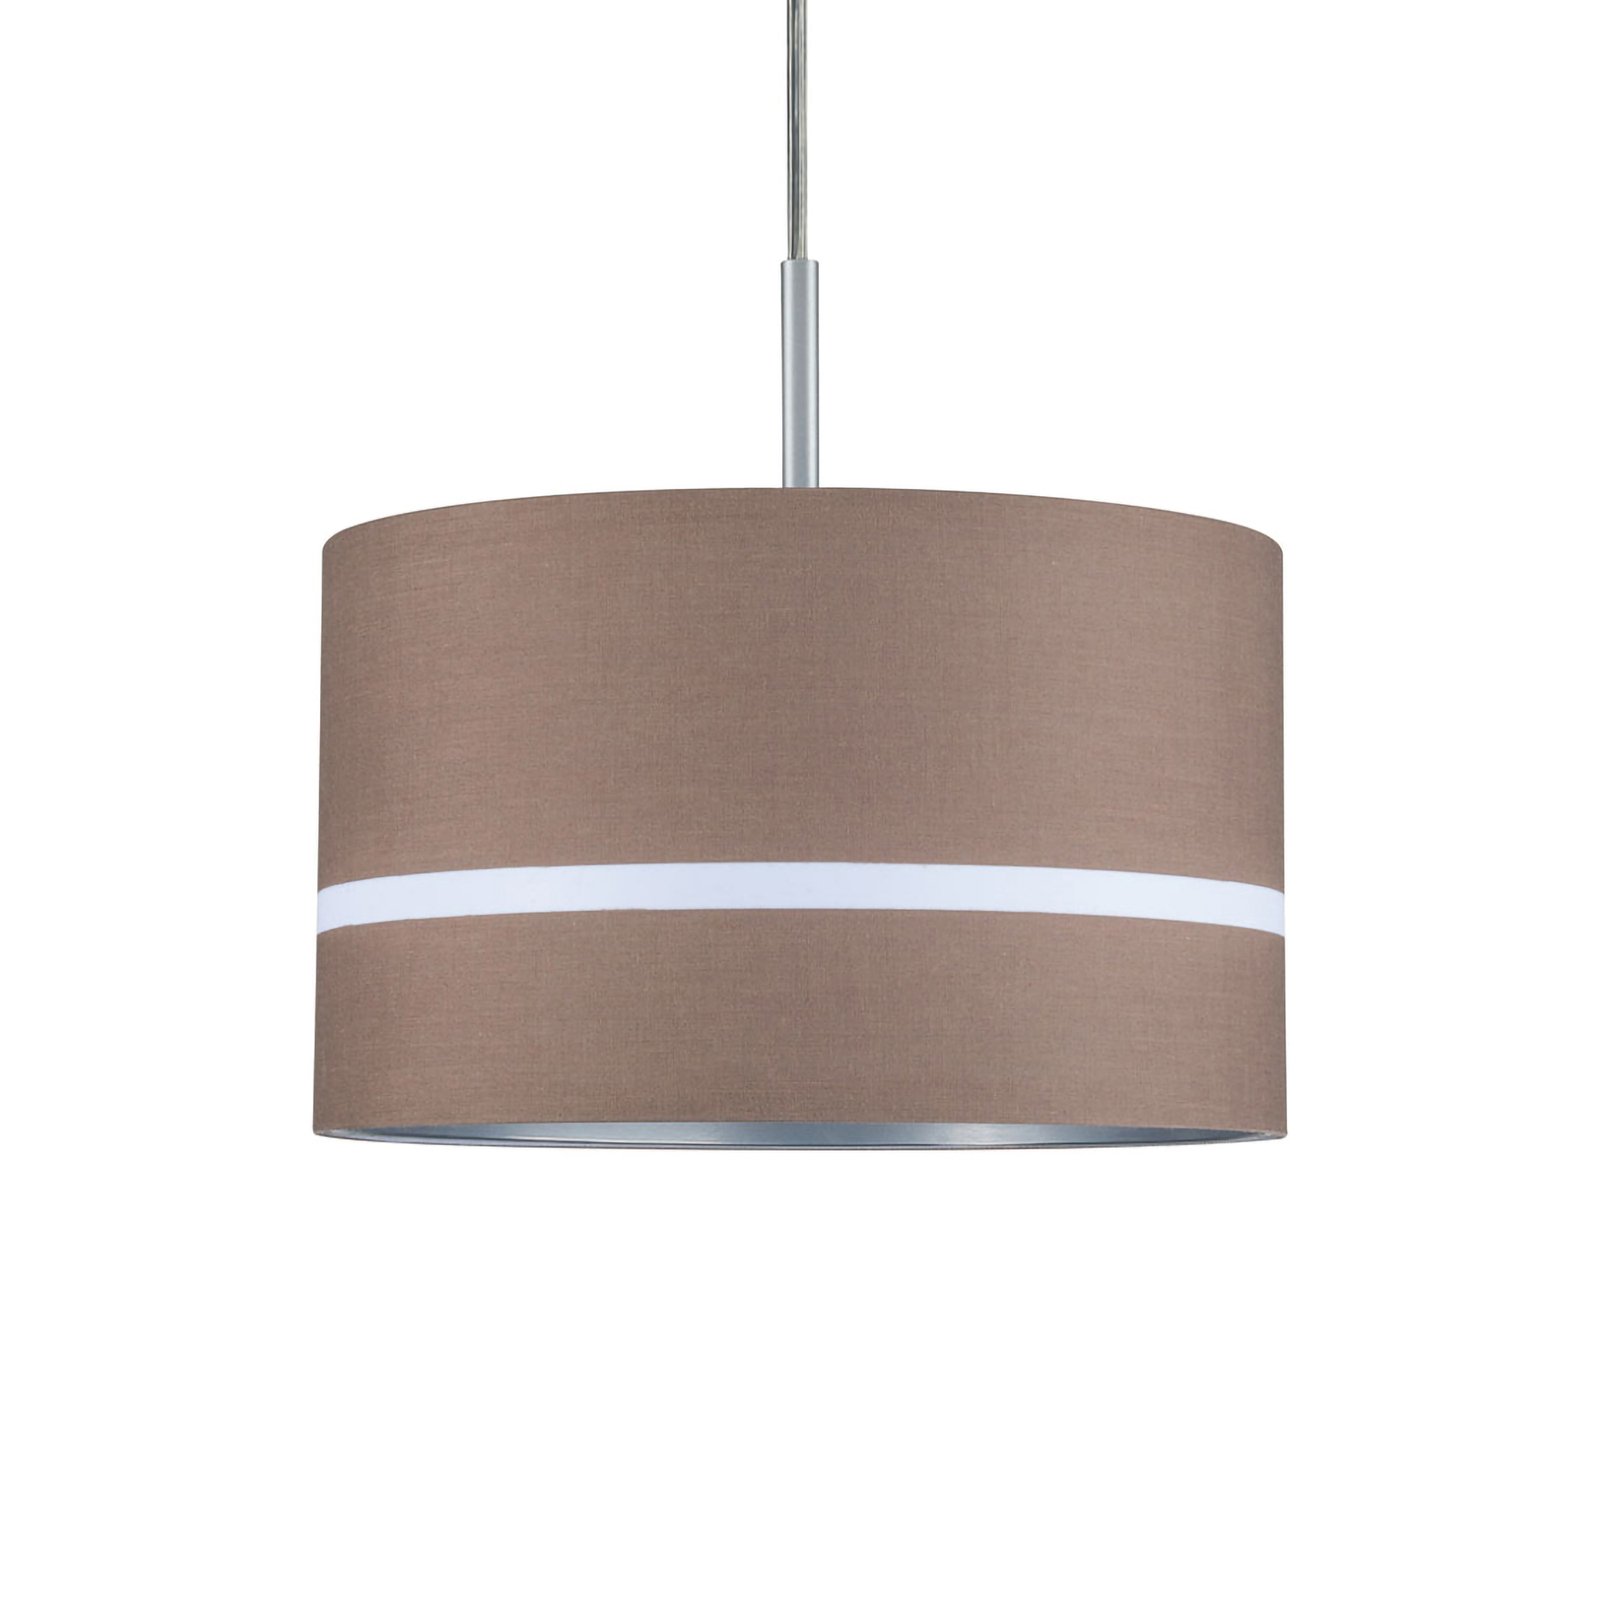 Paulmann lampshade Tessa, brown, striped, 26 cm, textile